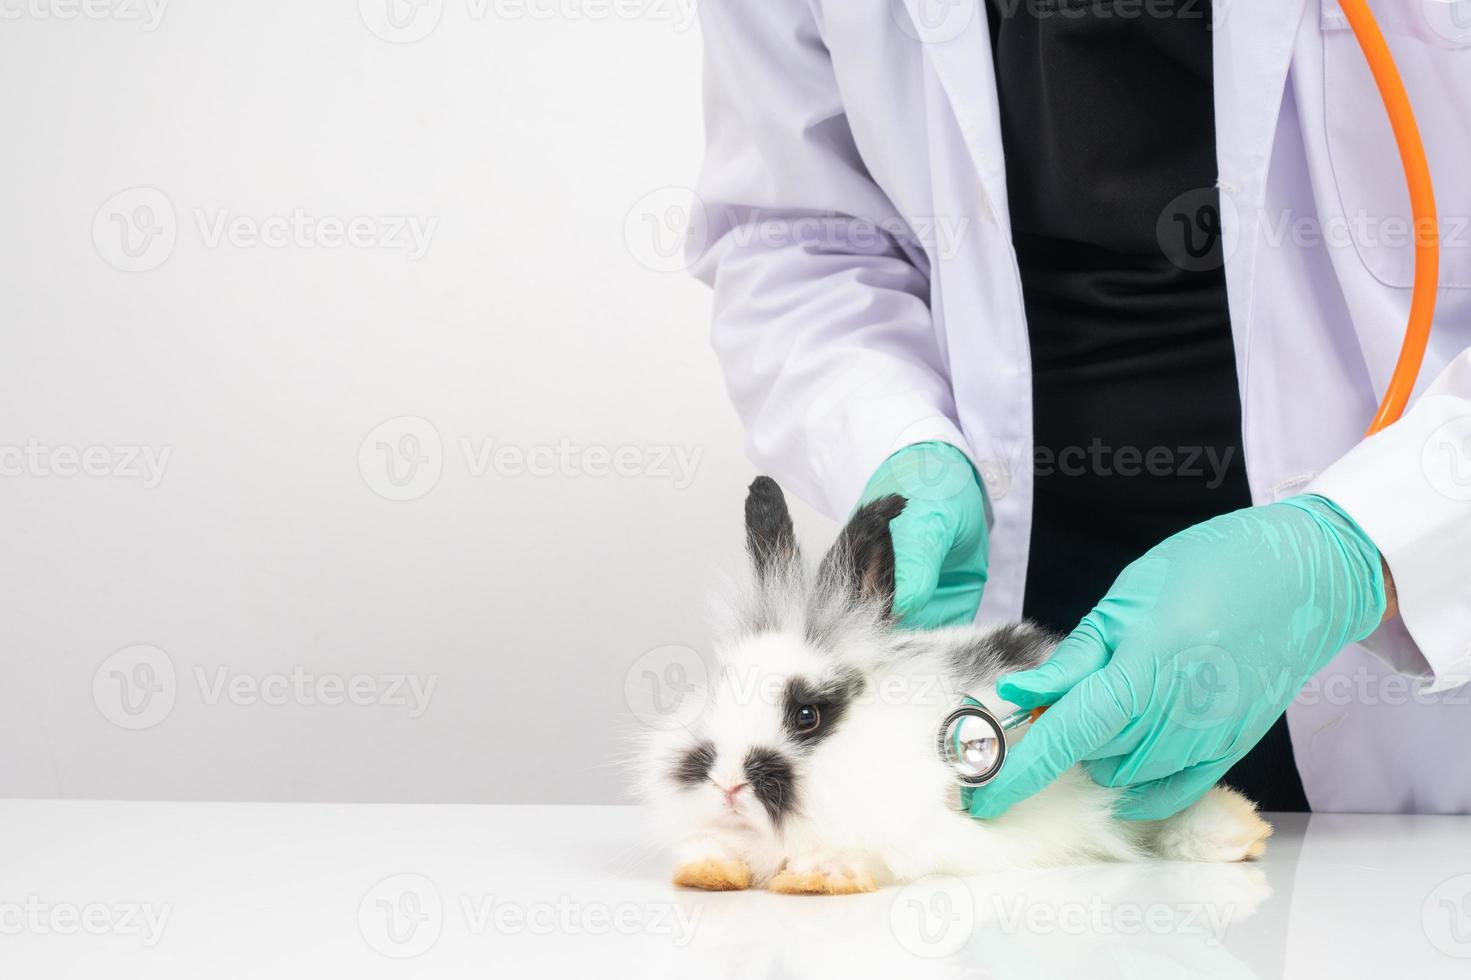 les vétérinaires utilisent un stéthoscope pour vérifier le cœur et les poumons du lapin moelleux dans les cliniques. concept de santé animale avec un professionnel dans un hôpital photo